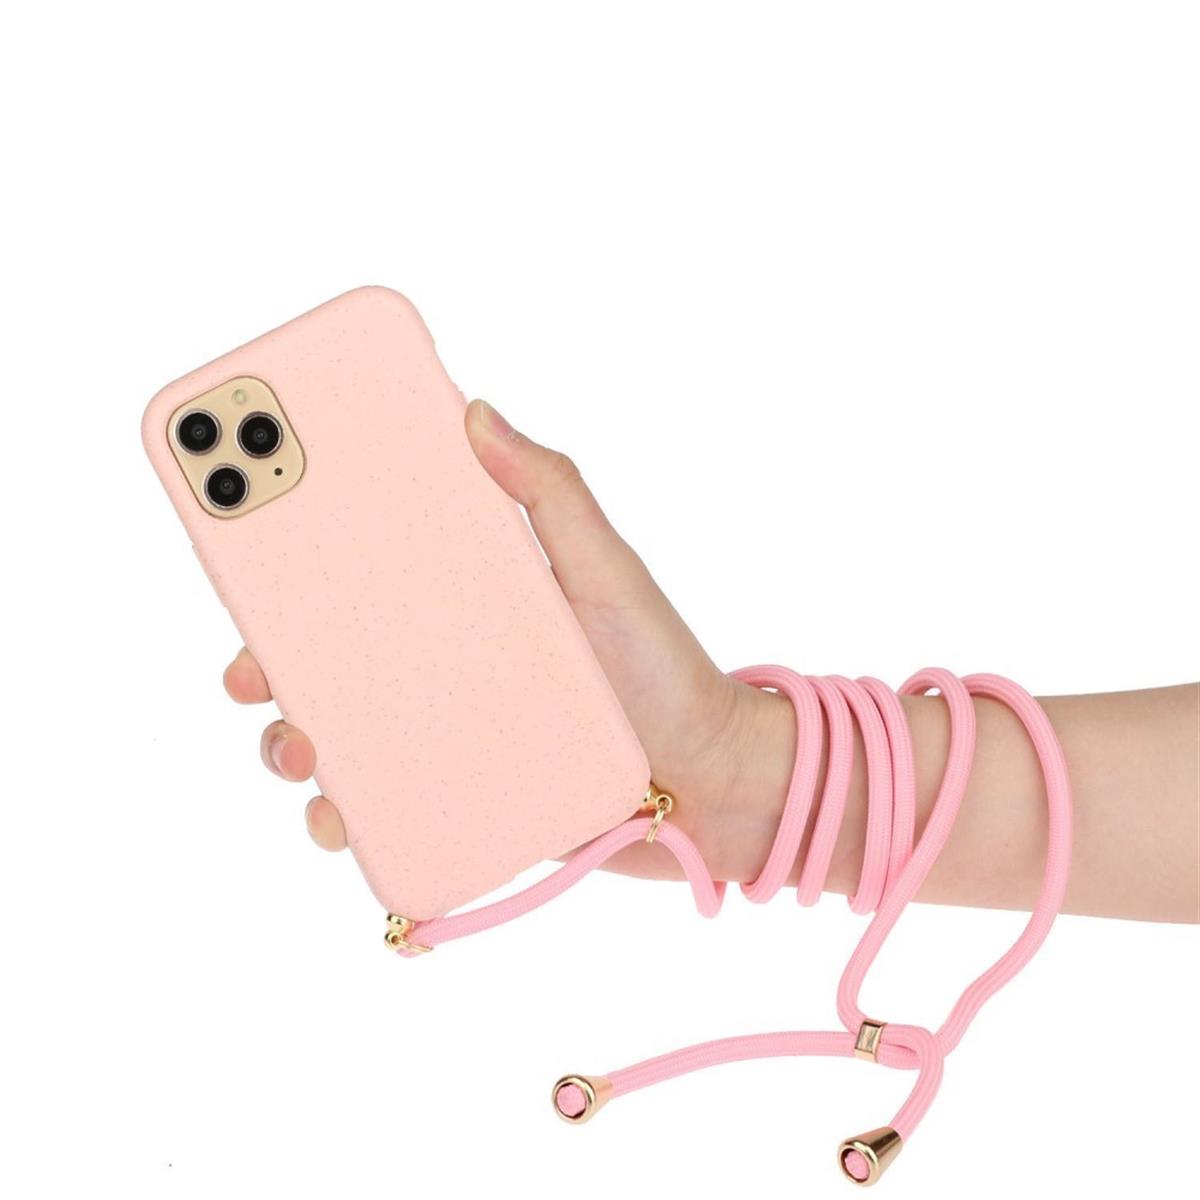 Hülle für Apple iPhone 13 Pro Handy Silikon Case Handykette Band Schnur Rosa